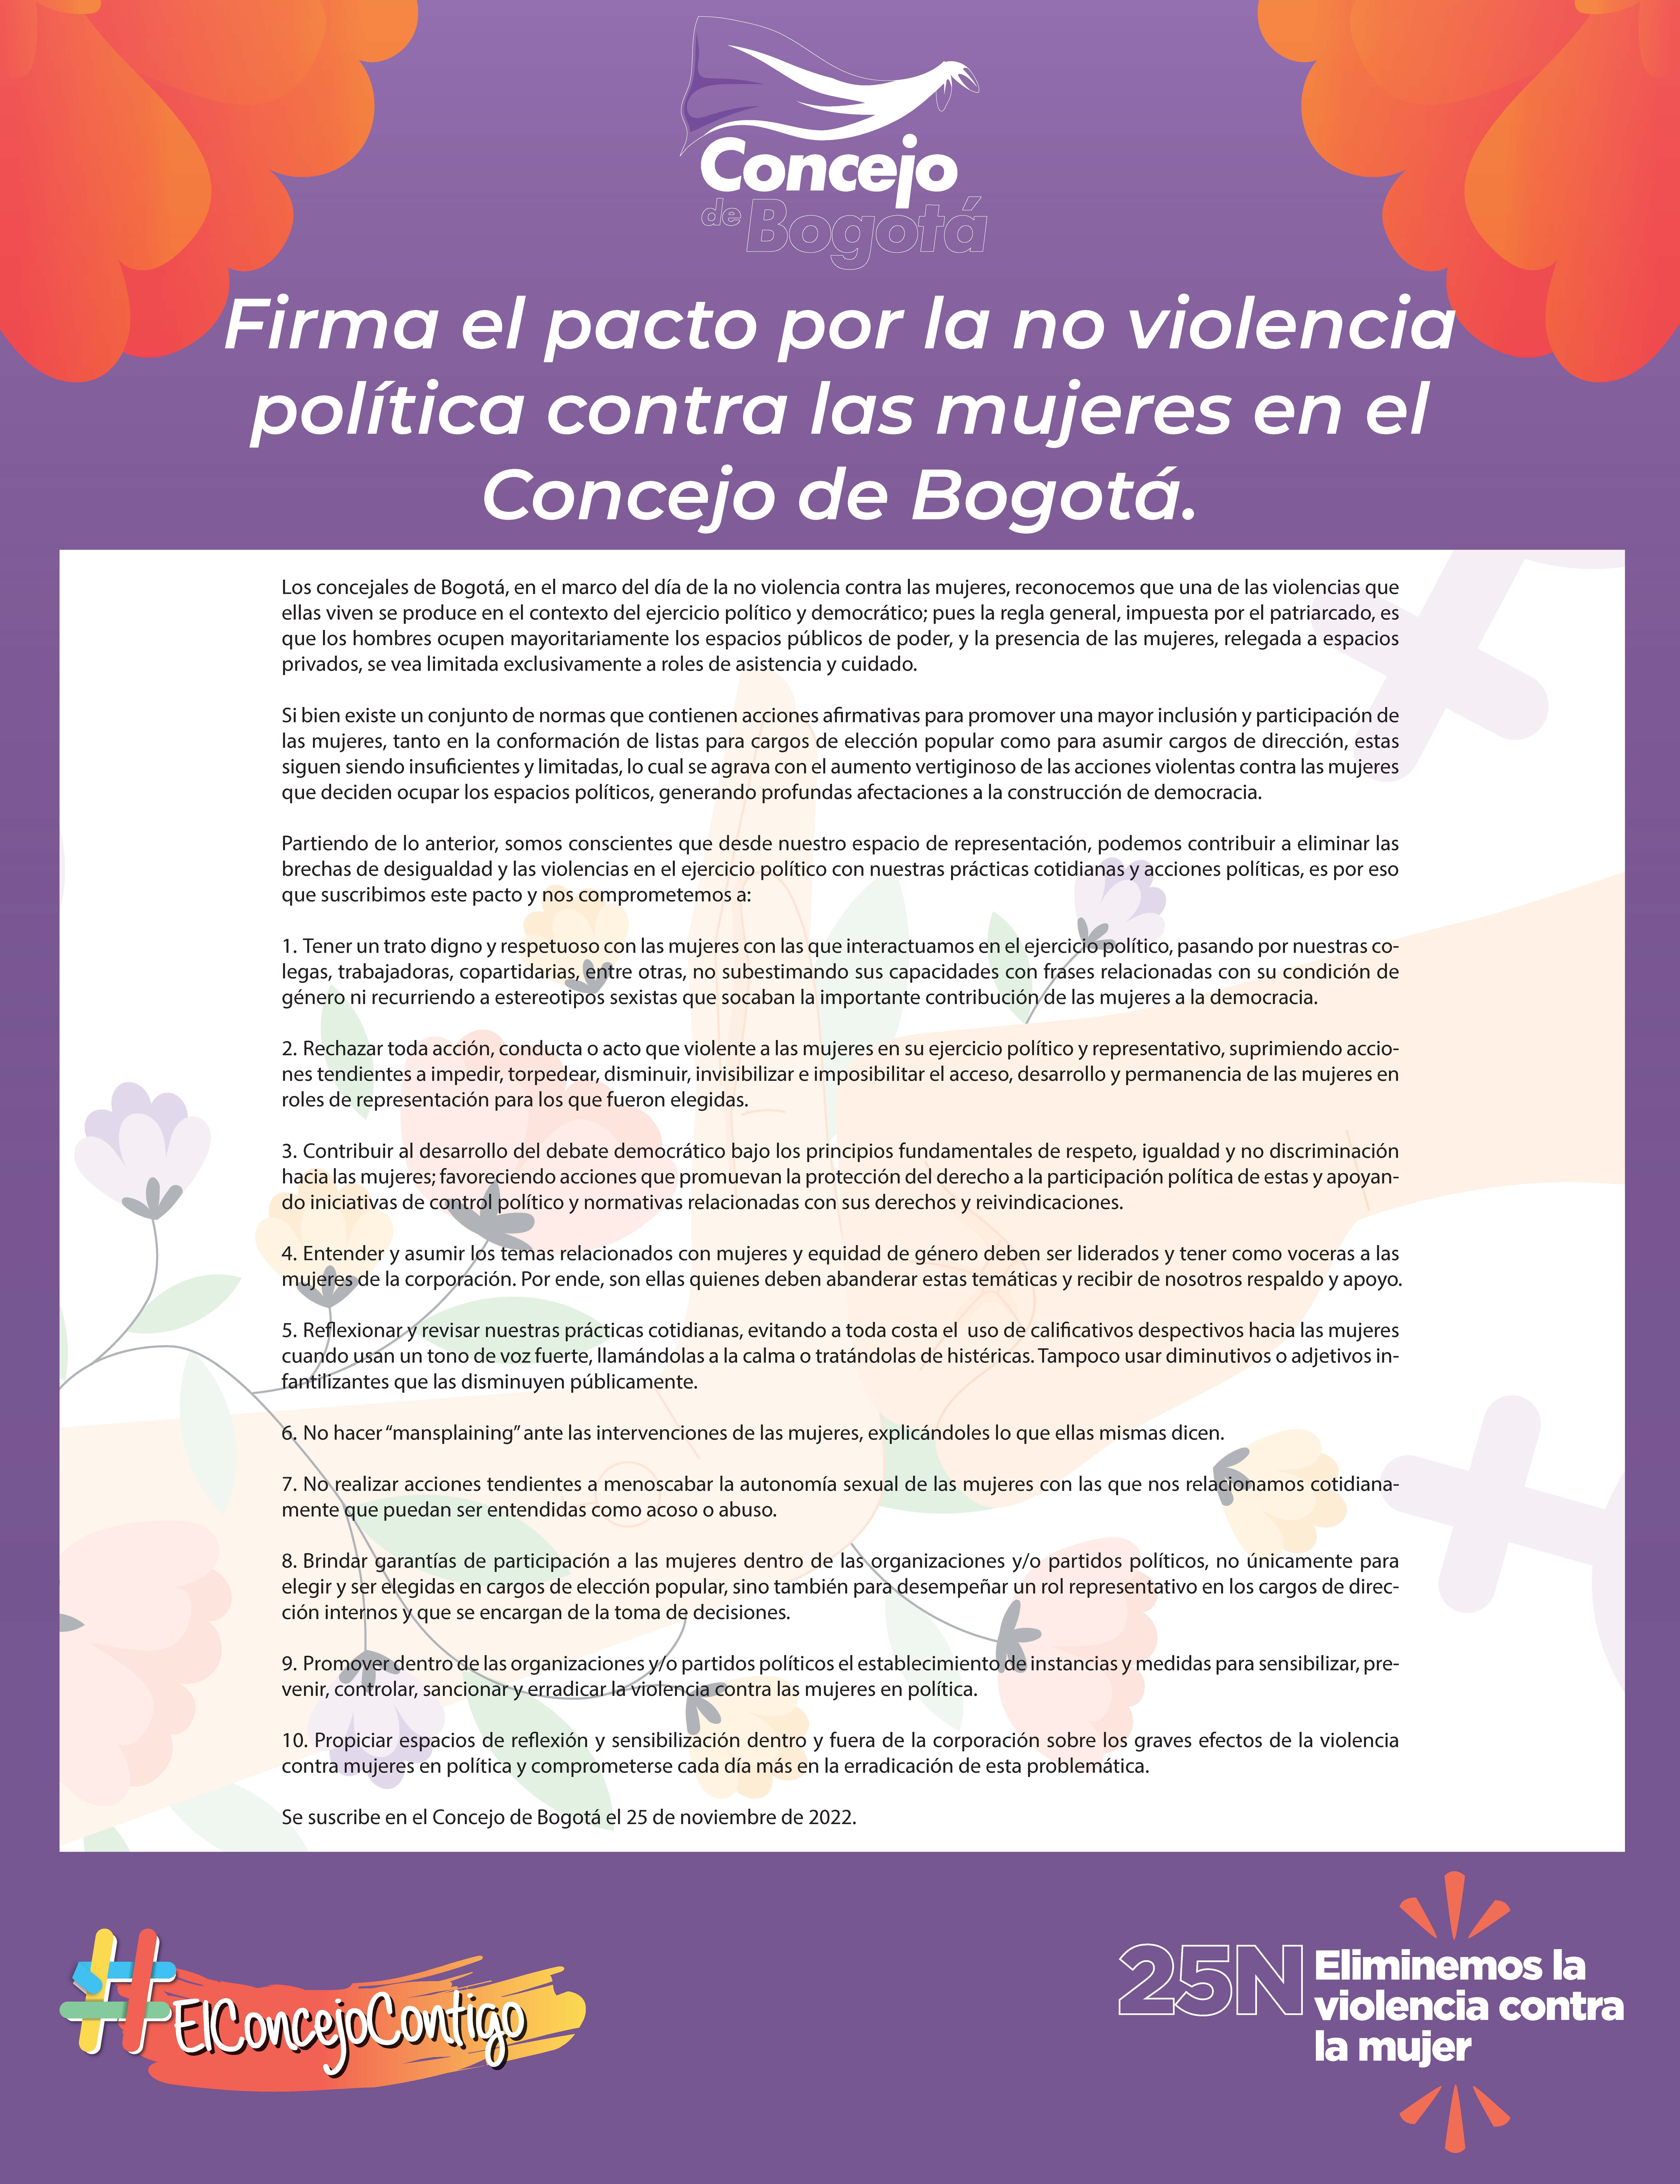 Imagen en la que se aprecia el contenido del documento llamado "Firma el pacto por la no violencia política contra las mujeres en el Concejo de Bogotá